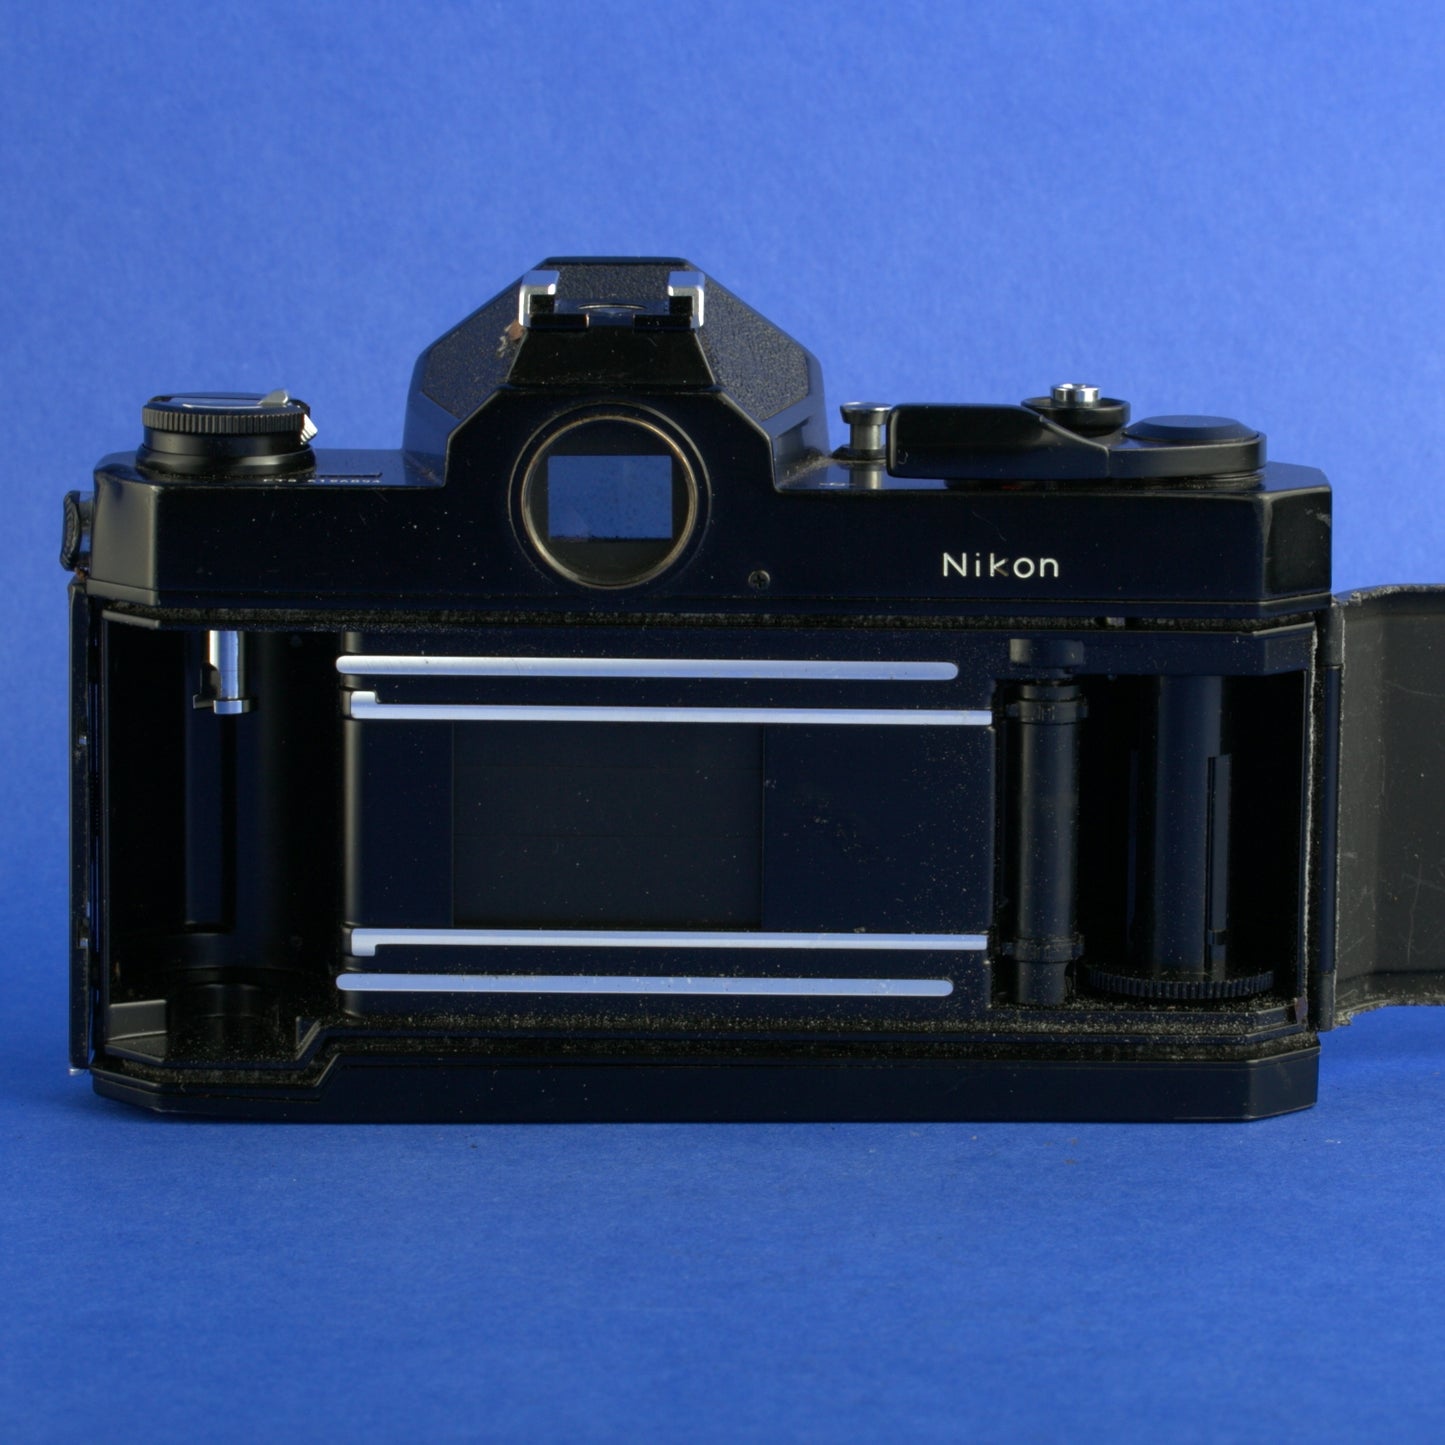 Black Nikon FT3 Film Camera Body